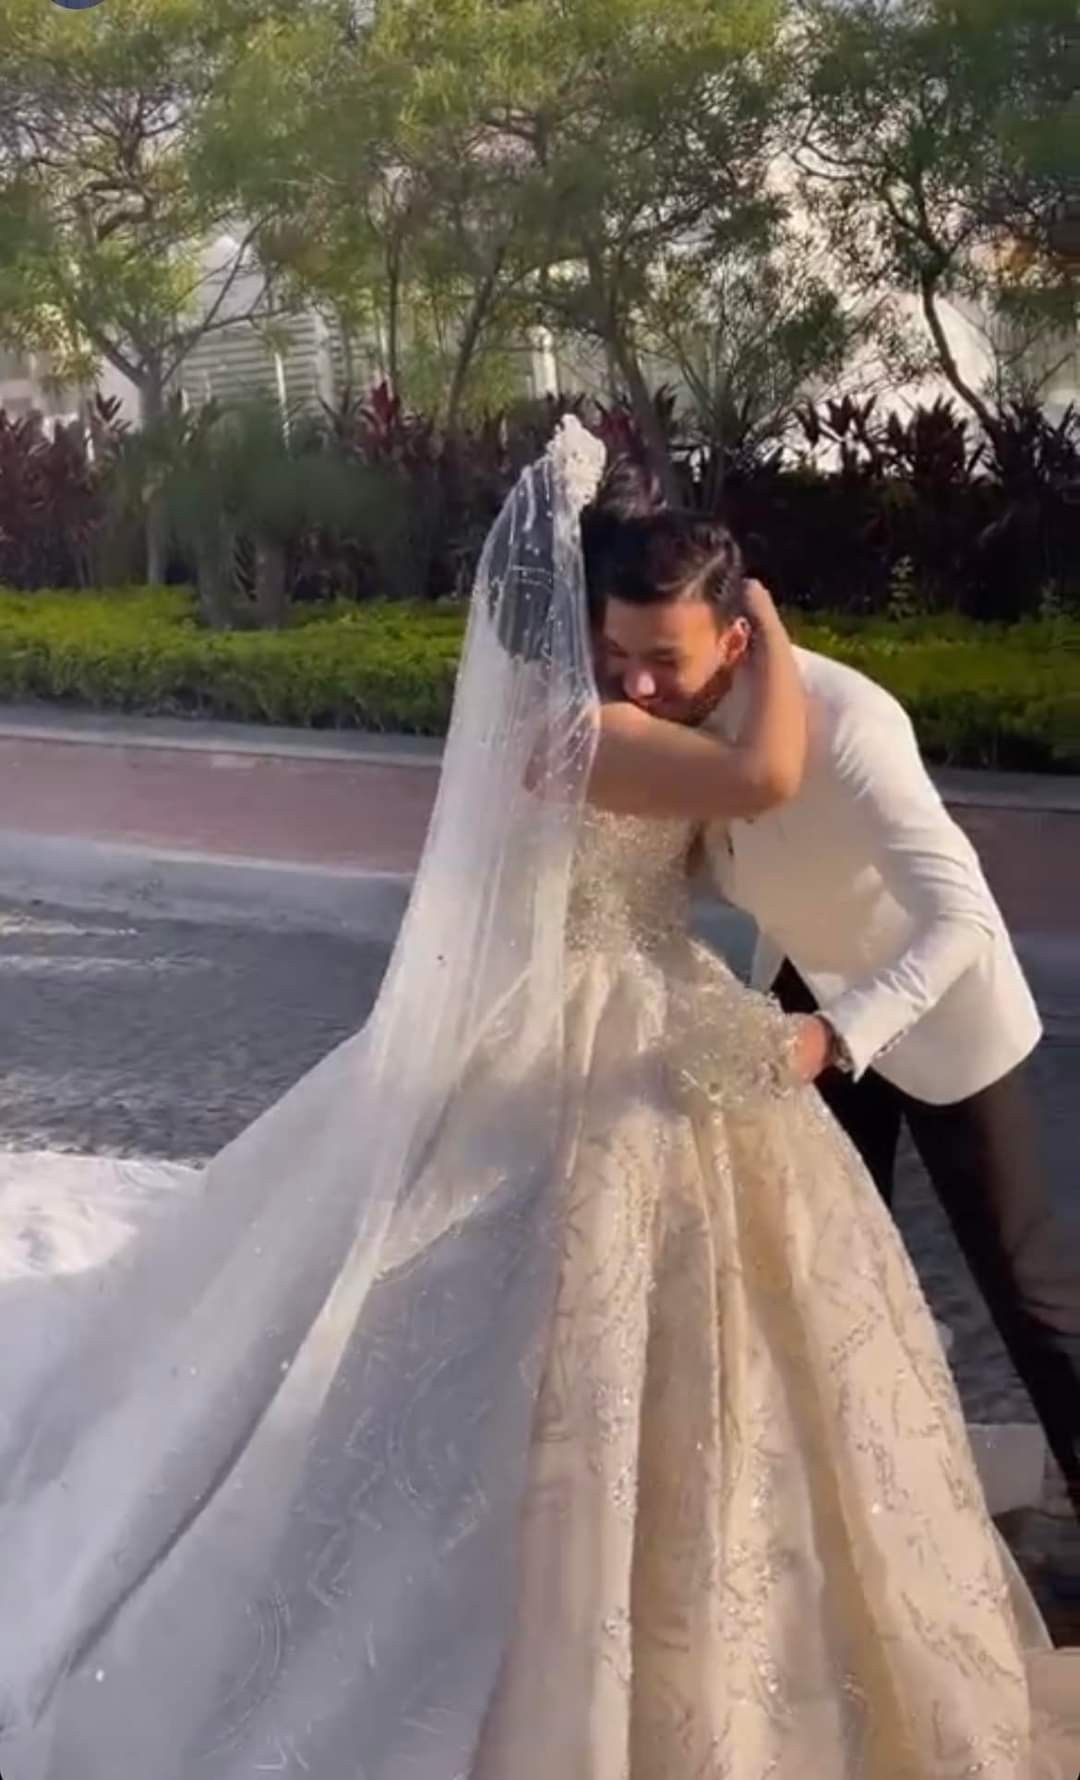 شاهد: حفل زفاف حودة بندق وشقيقة المغني إياد جيان